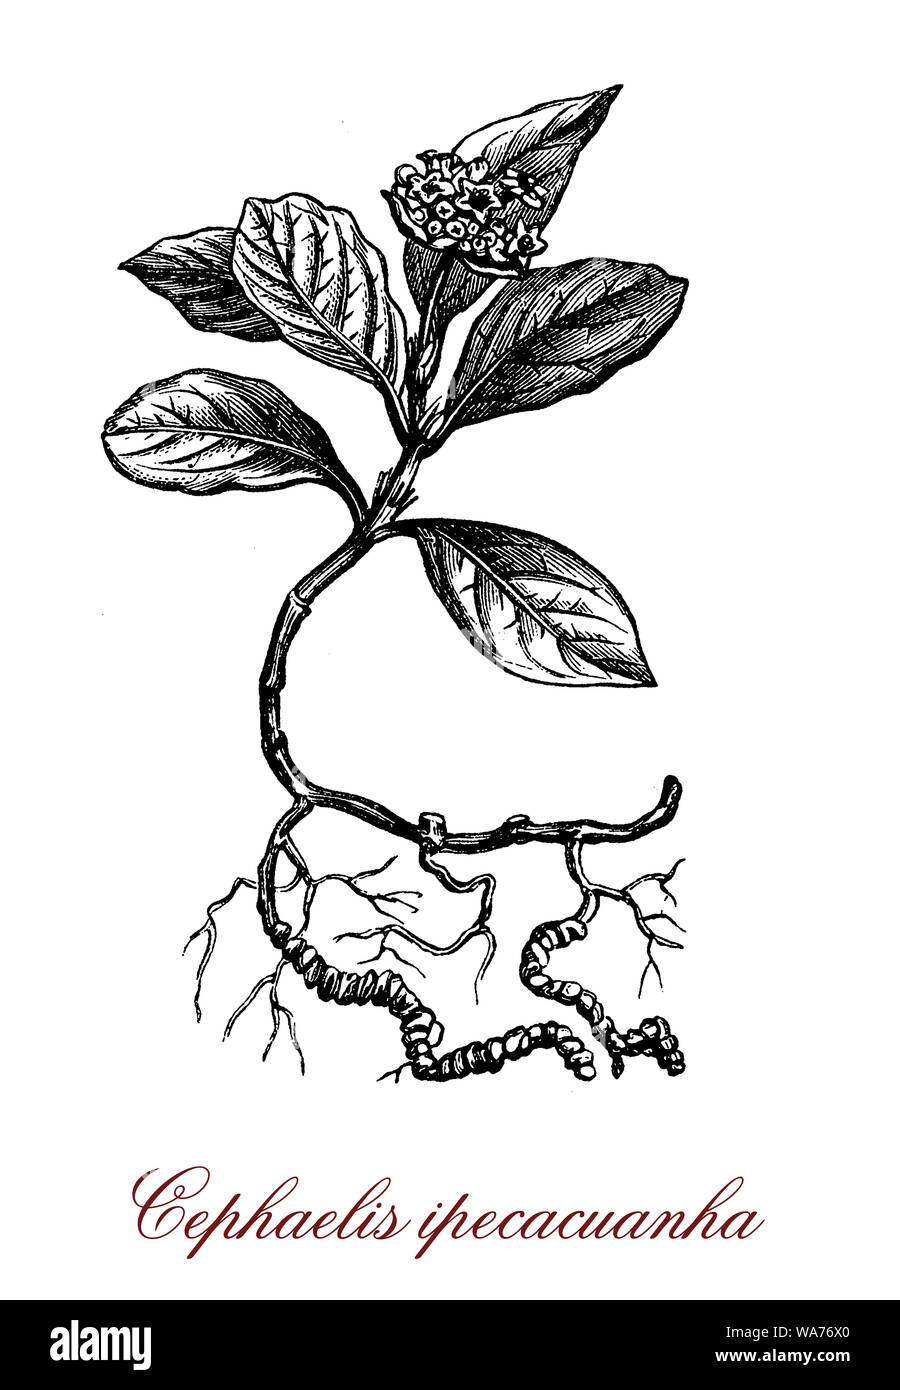 Cephaelis ipecacuana pianta flowering nativa per l'America centrale e del Sud; le radici sono usate per fare lo sciroppo di ipecac, un emetico potente. Foto Stock